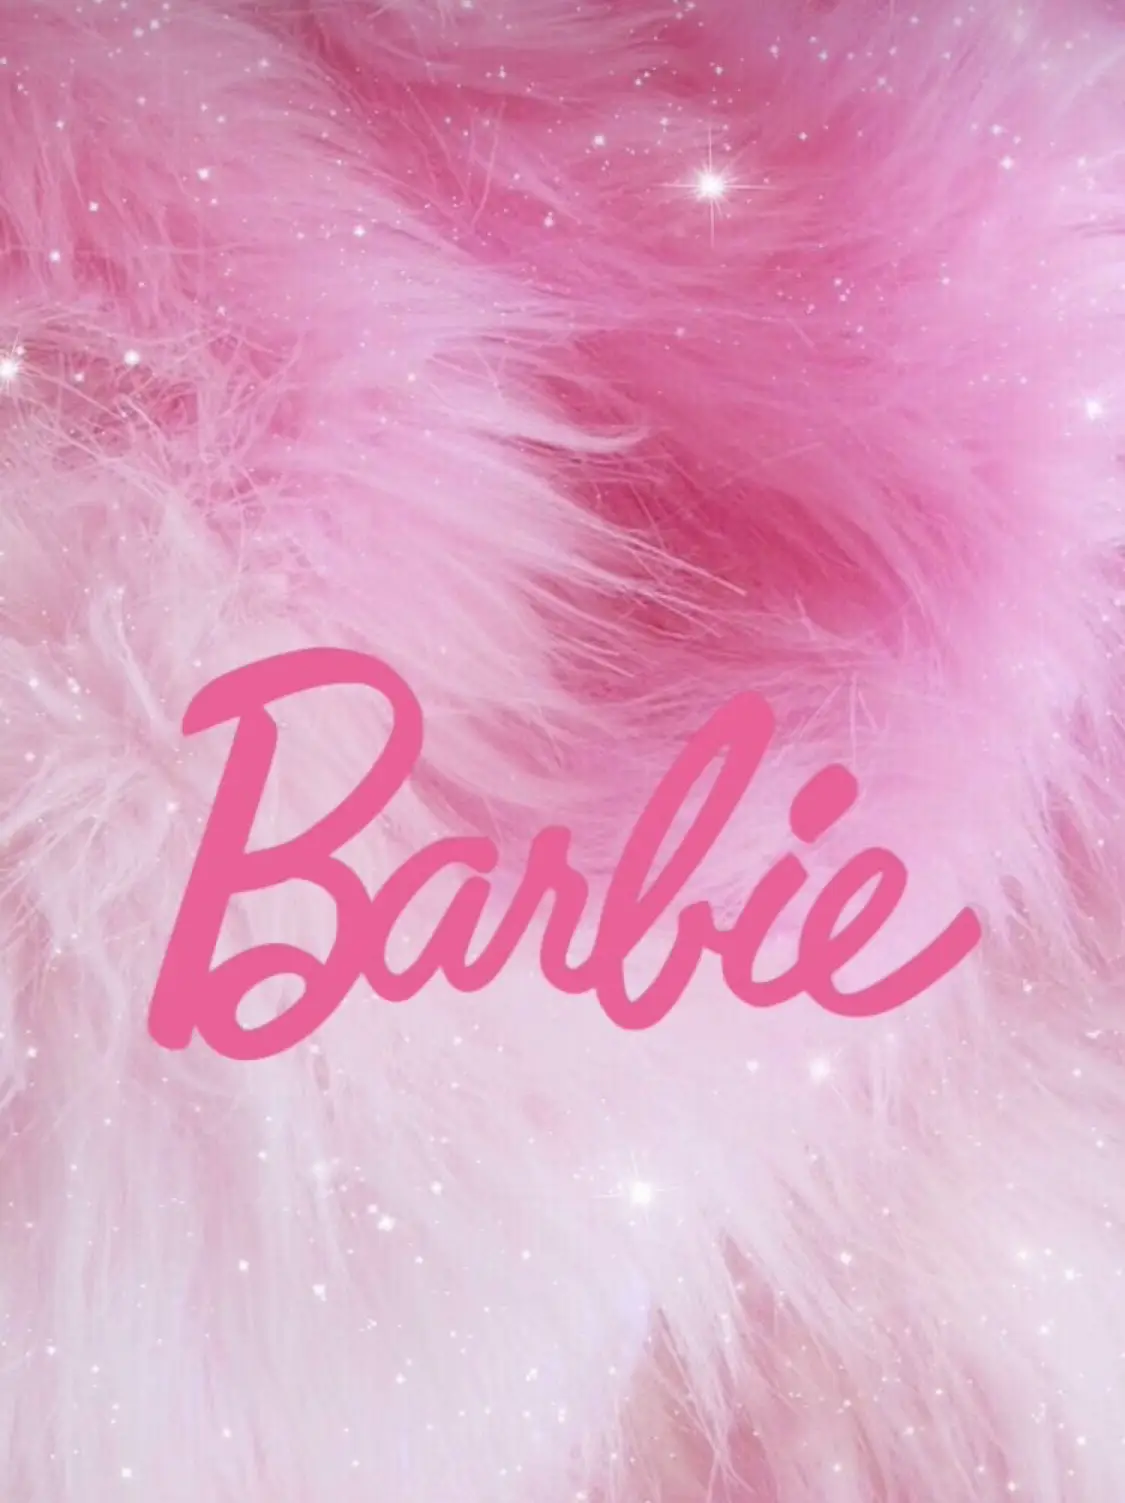 balletcore, pink pilates princess, barbie movie..